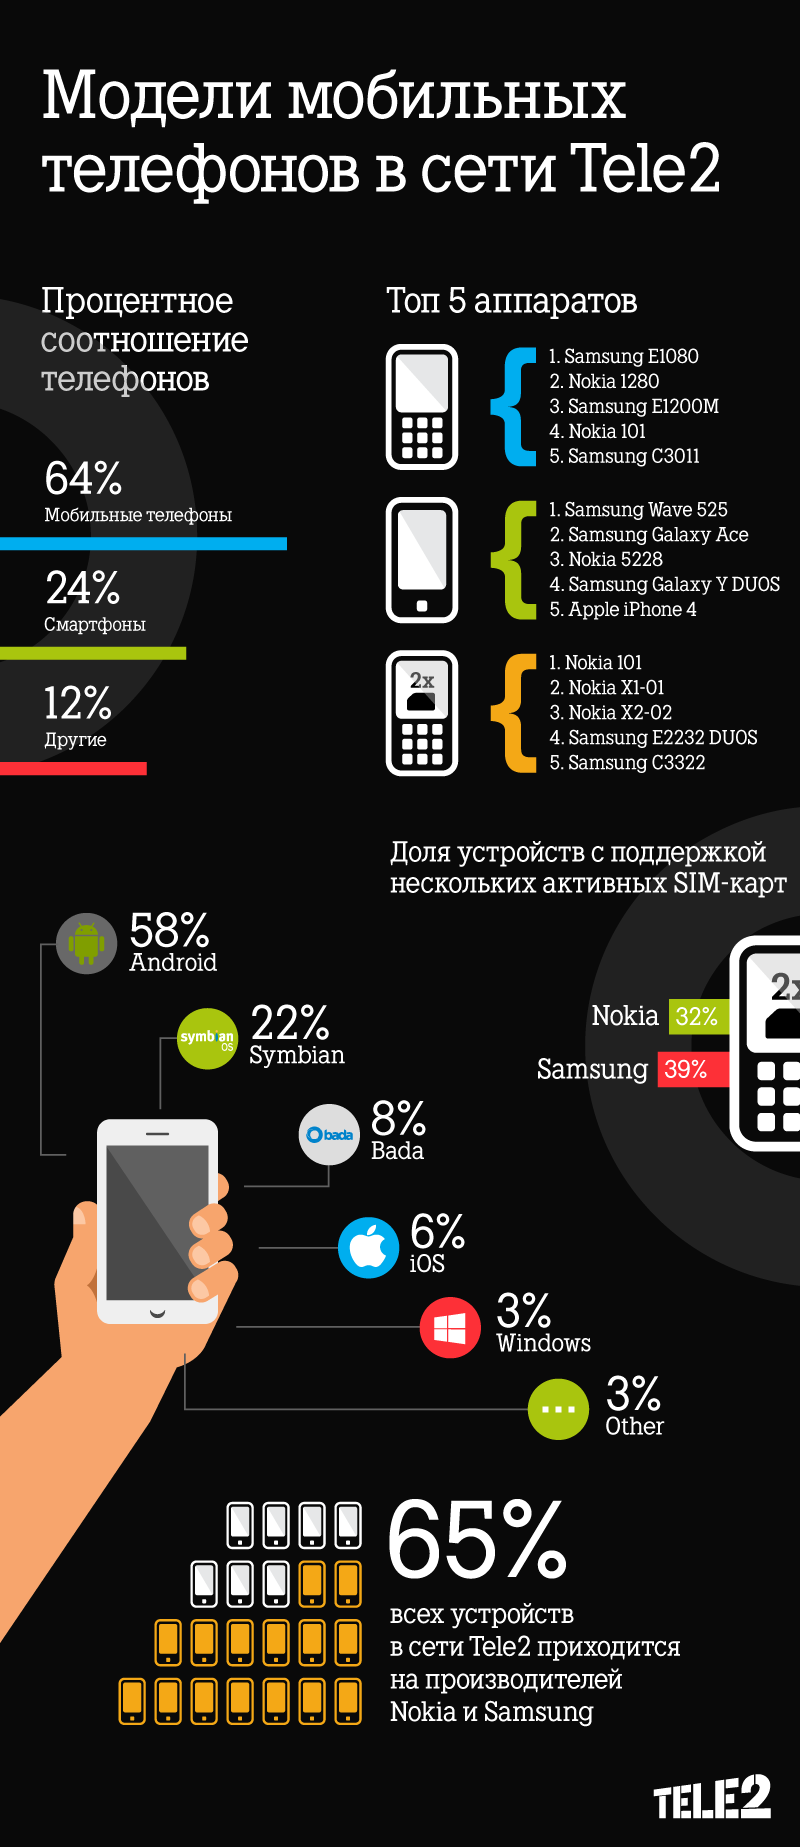 Телефон наилучшим приемом сети. Мобильная сеть. Мобильная связь теле2. Мобильные сети в России. Примеры мобильных устройств.